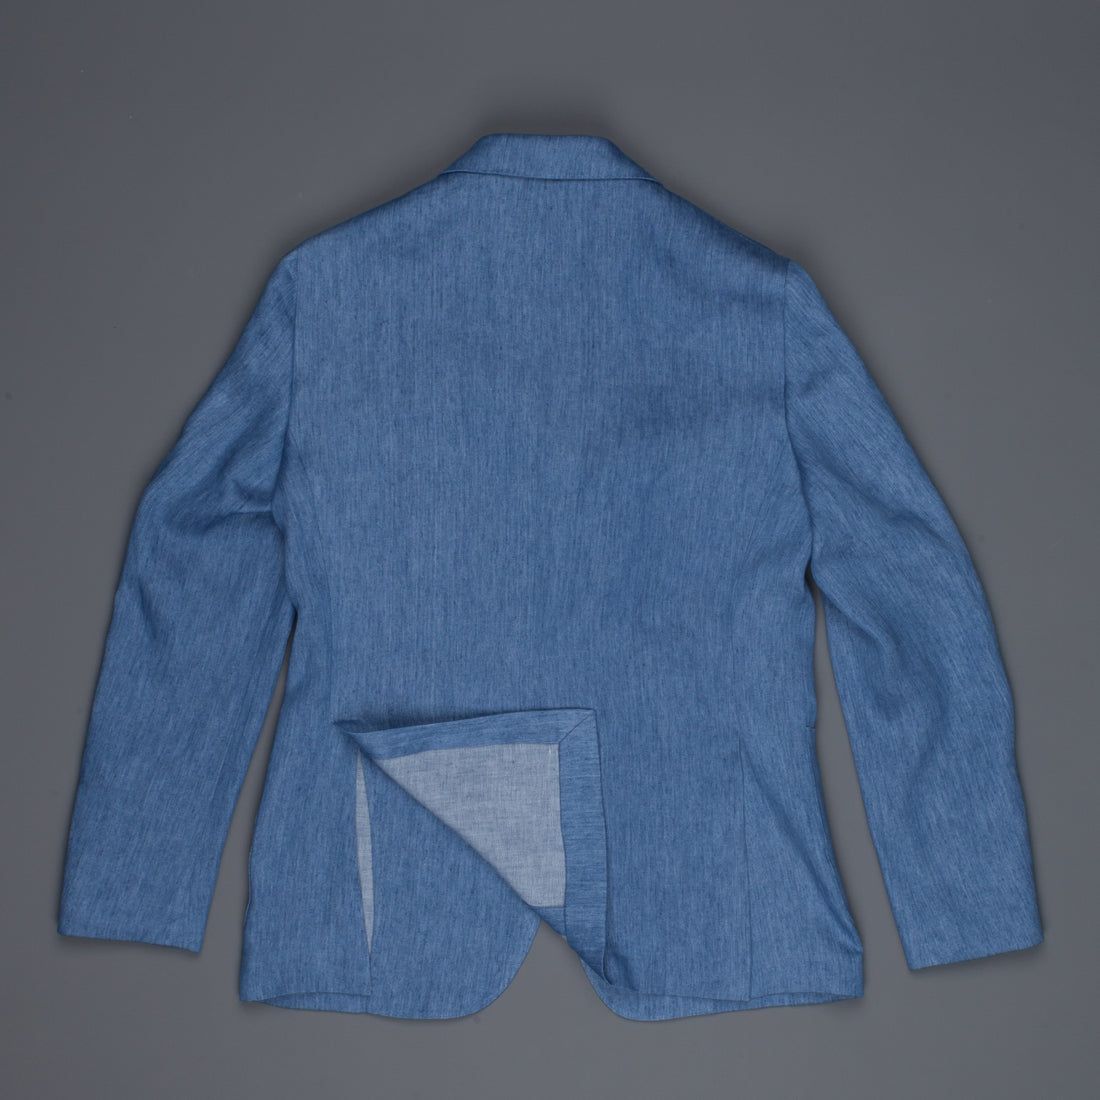 Caruso Butterfly GZE jacket blu denim linen